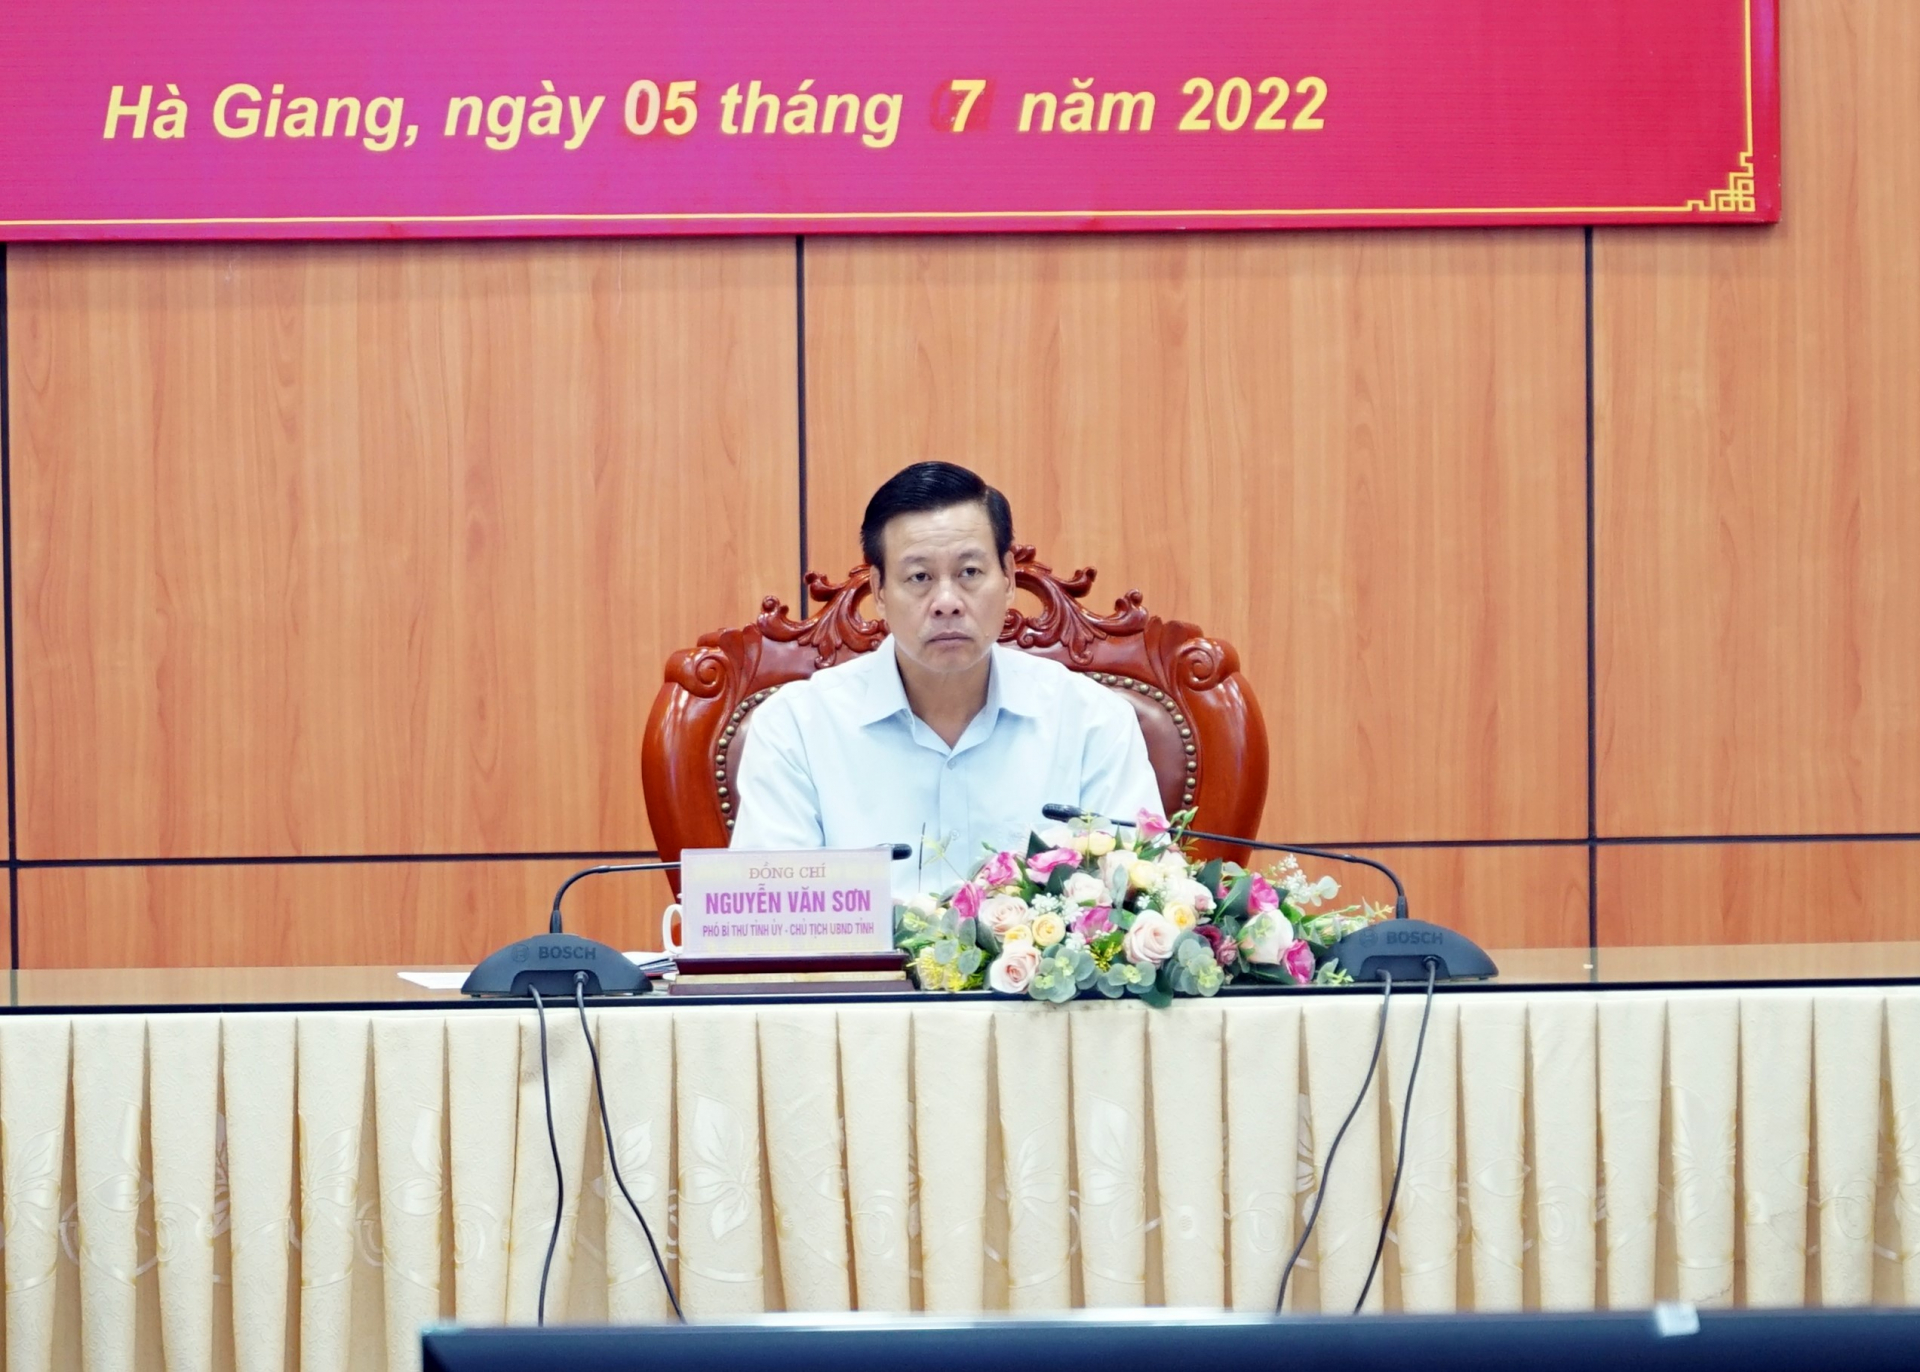 Phó Bí thư Tỉnh ủy, Chủ tịch UBND tỉnh Nguyễn Văn Sơn chủ trì hội nghị tại điểm cầu tỉnh Hà Giang.